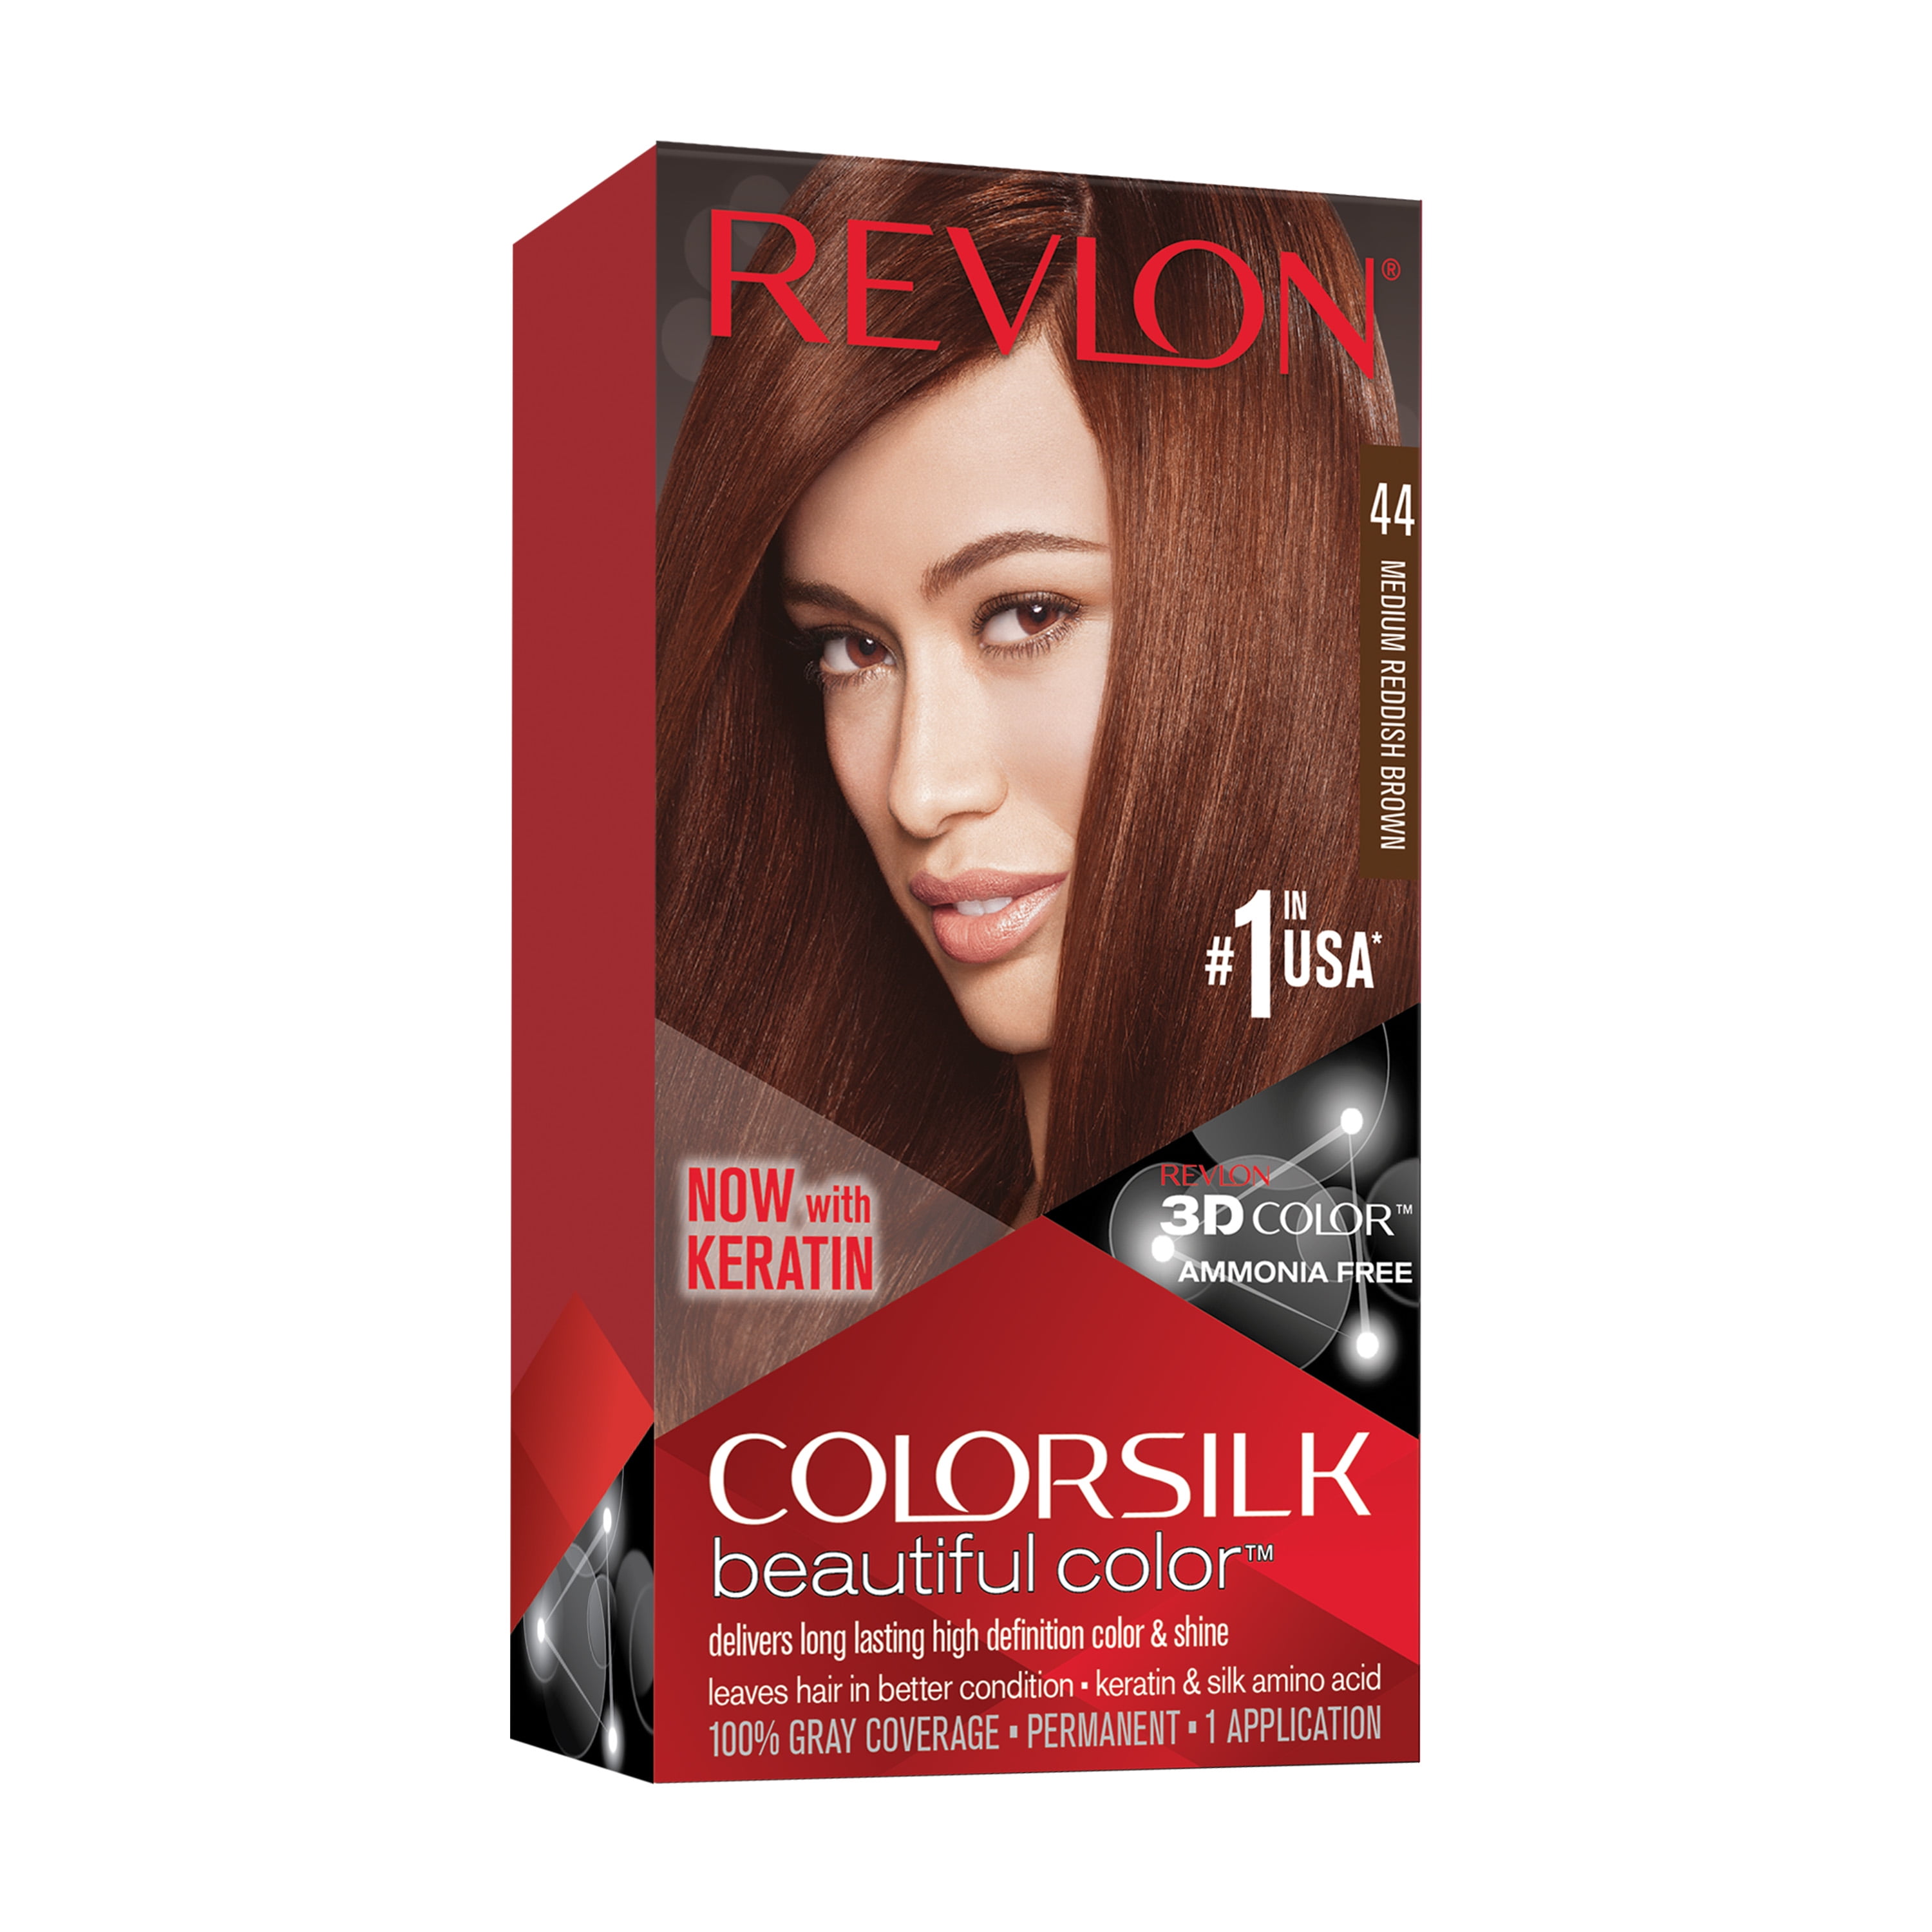 Revlon ColorSilk Beautiful Color Permanent Hair Color, 44 Medium Reddish  Brown, 1 Count 